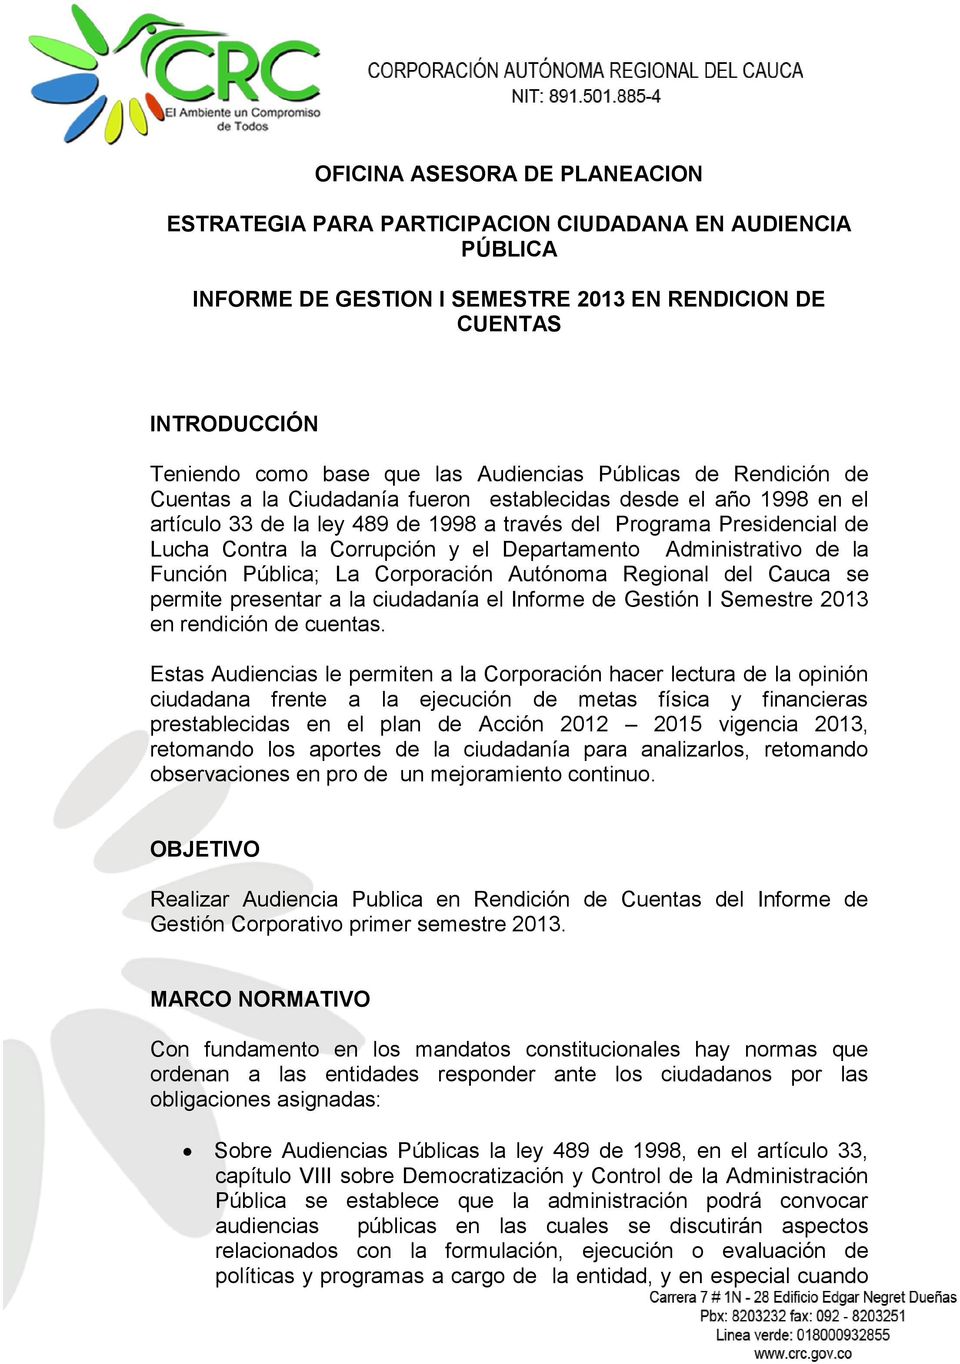 Corrupción y el Departamento Administrativo de la Función Pública; La Corporación Autónoma Regional del Cauca se permite presentar a la ciudadanía el Informe de Gestión I Semestre 2013 en rendición